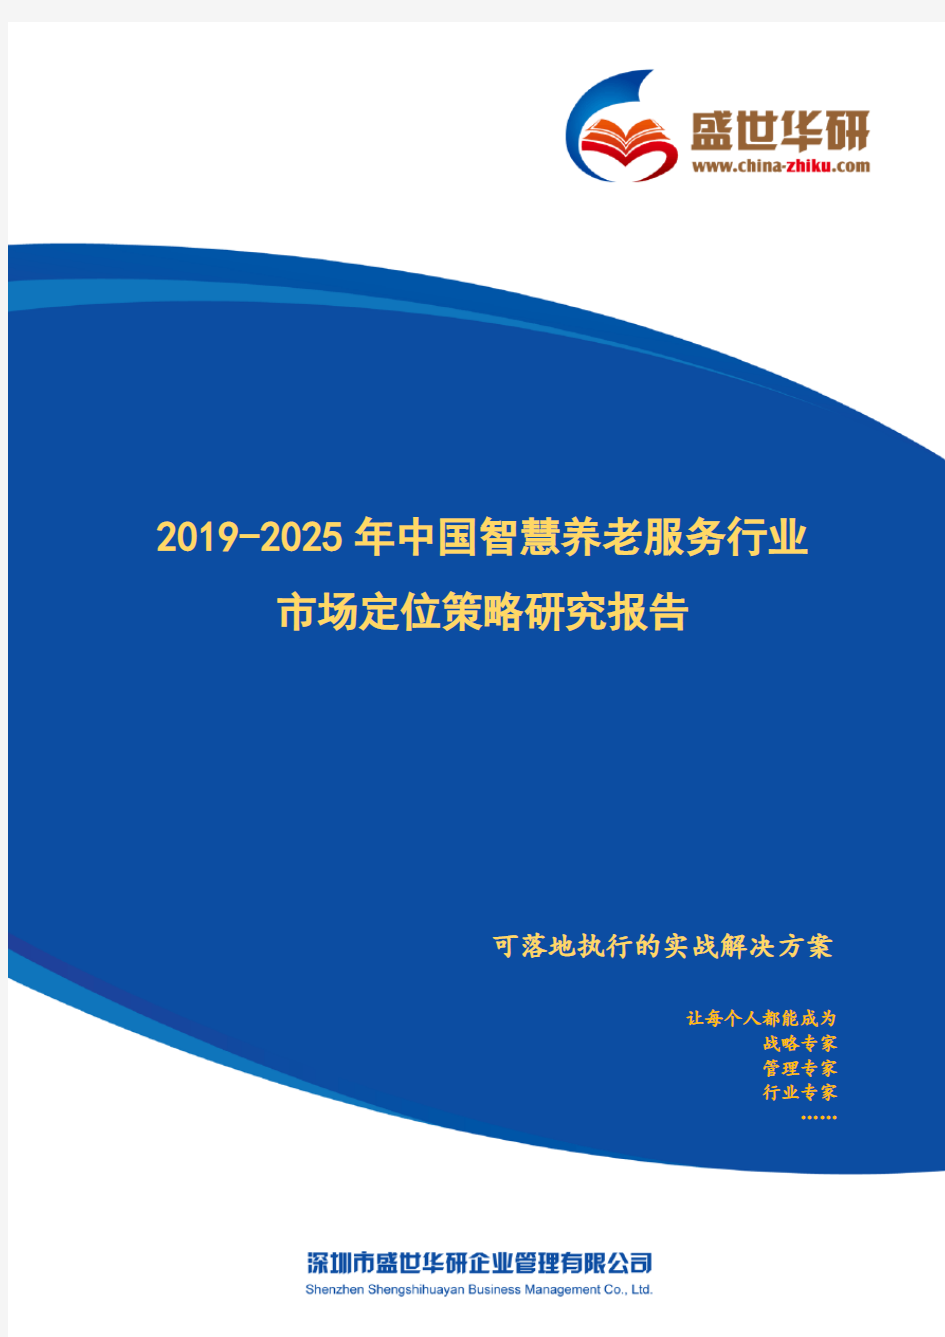 【完整版】2019-2025年中国智慧养老服务行业市场定位策略研究报告